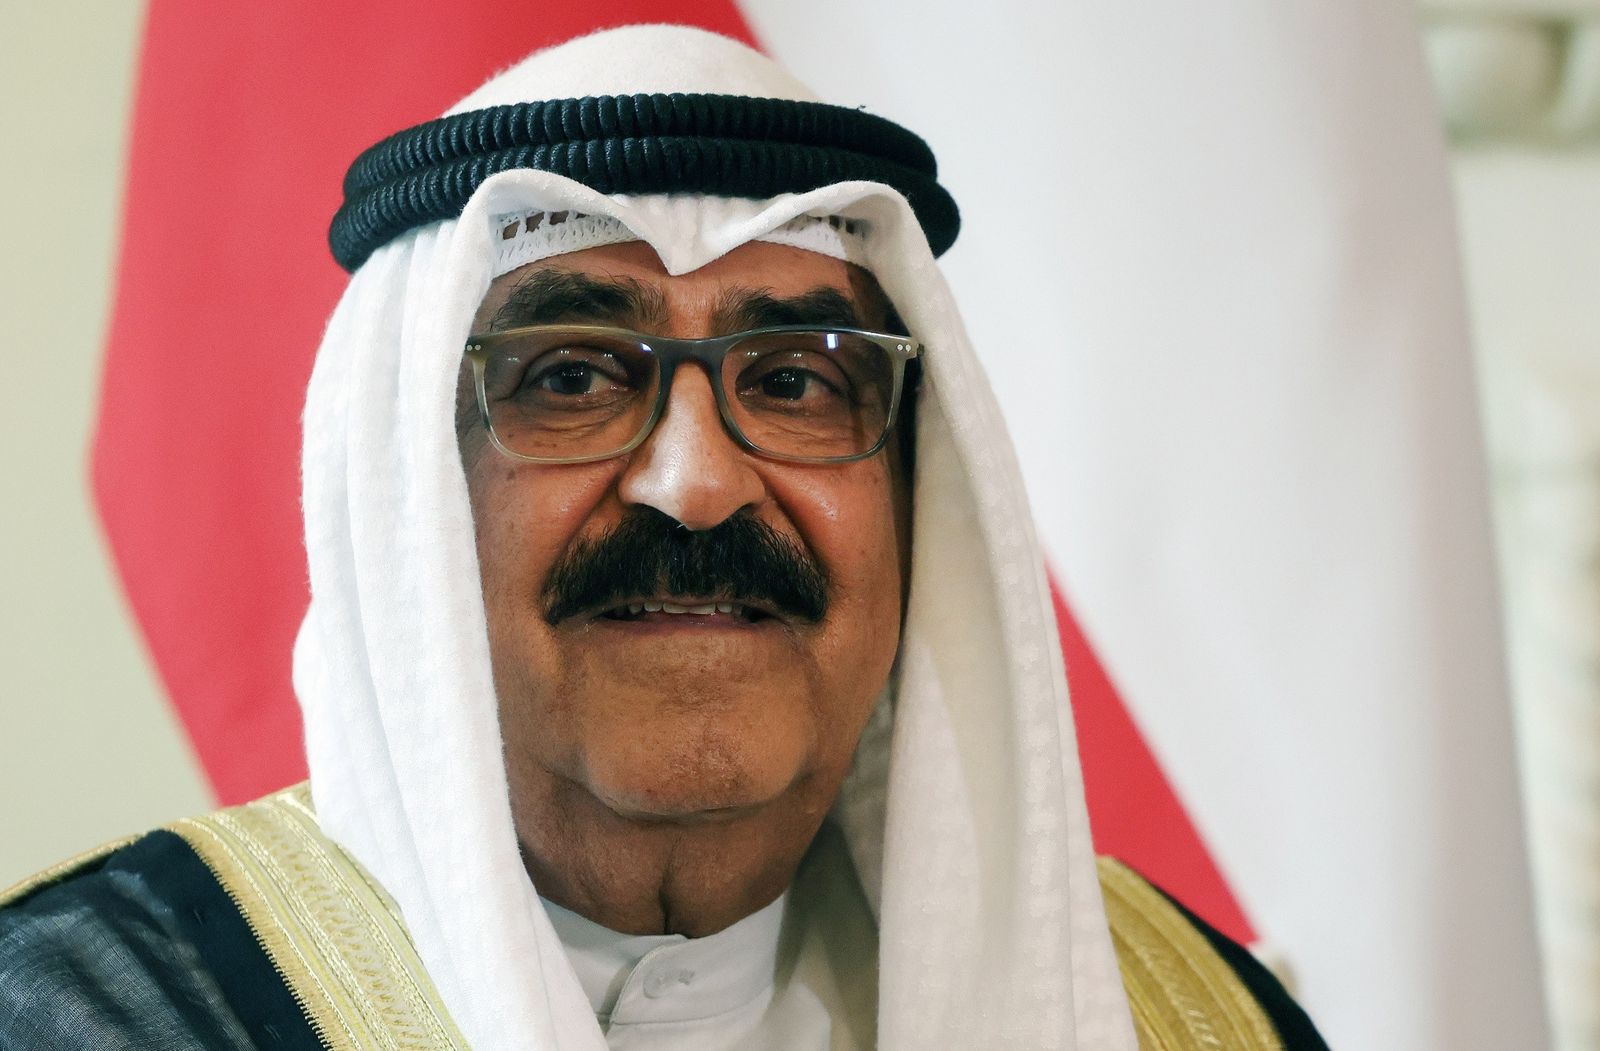 أمير الكويت يقرر حل مجلس الأمة ووقف بعض مواد الدستور لمدة لا تزيد عن 4 سنوات